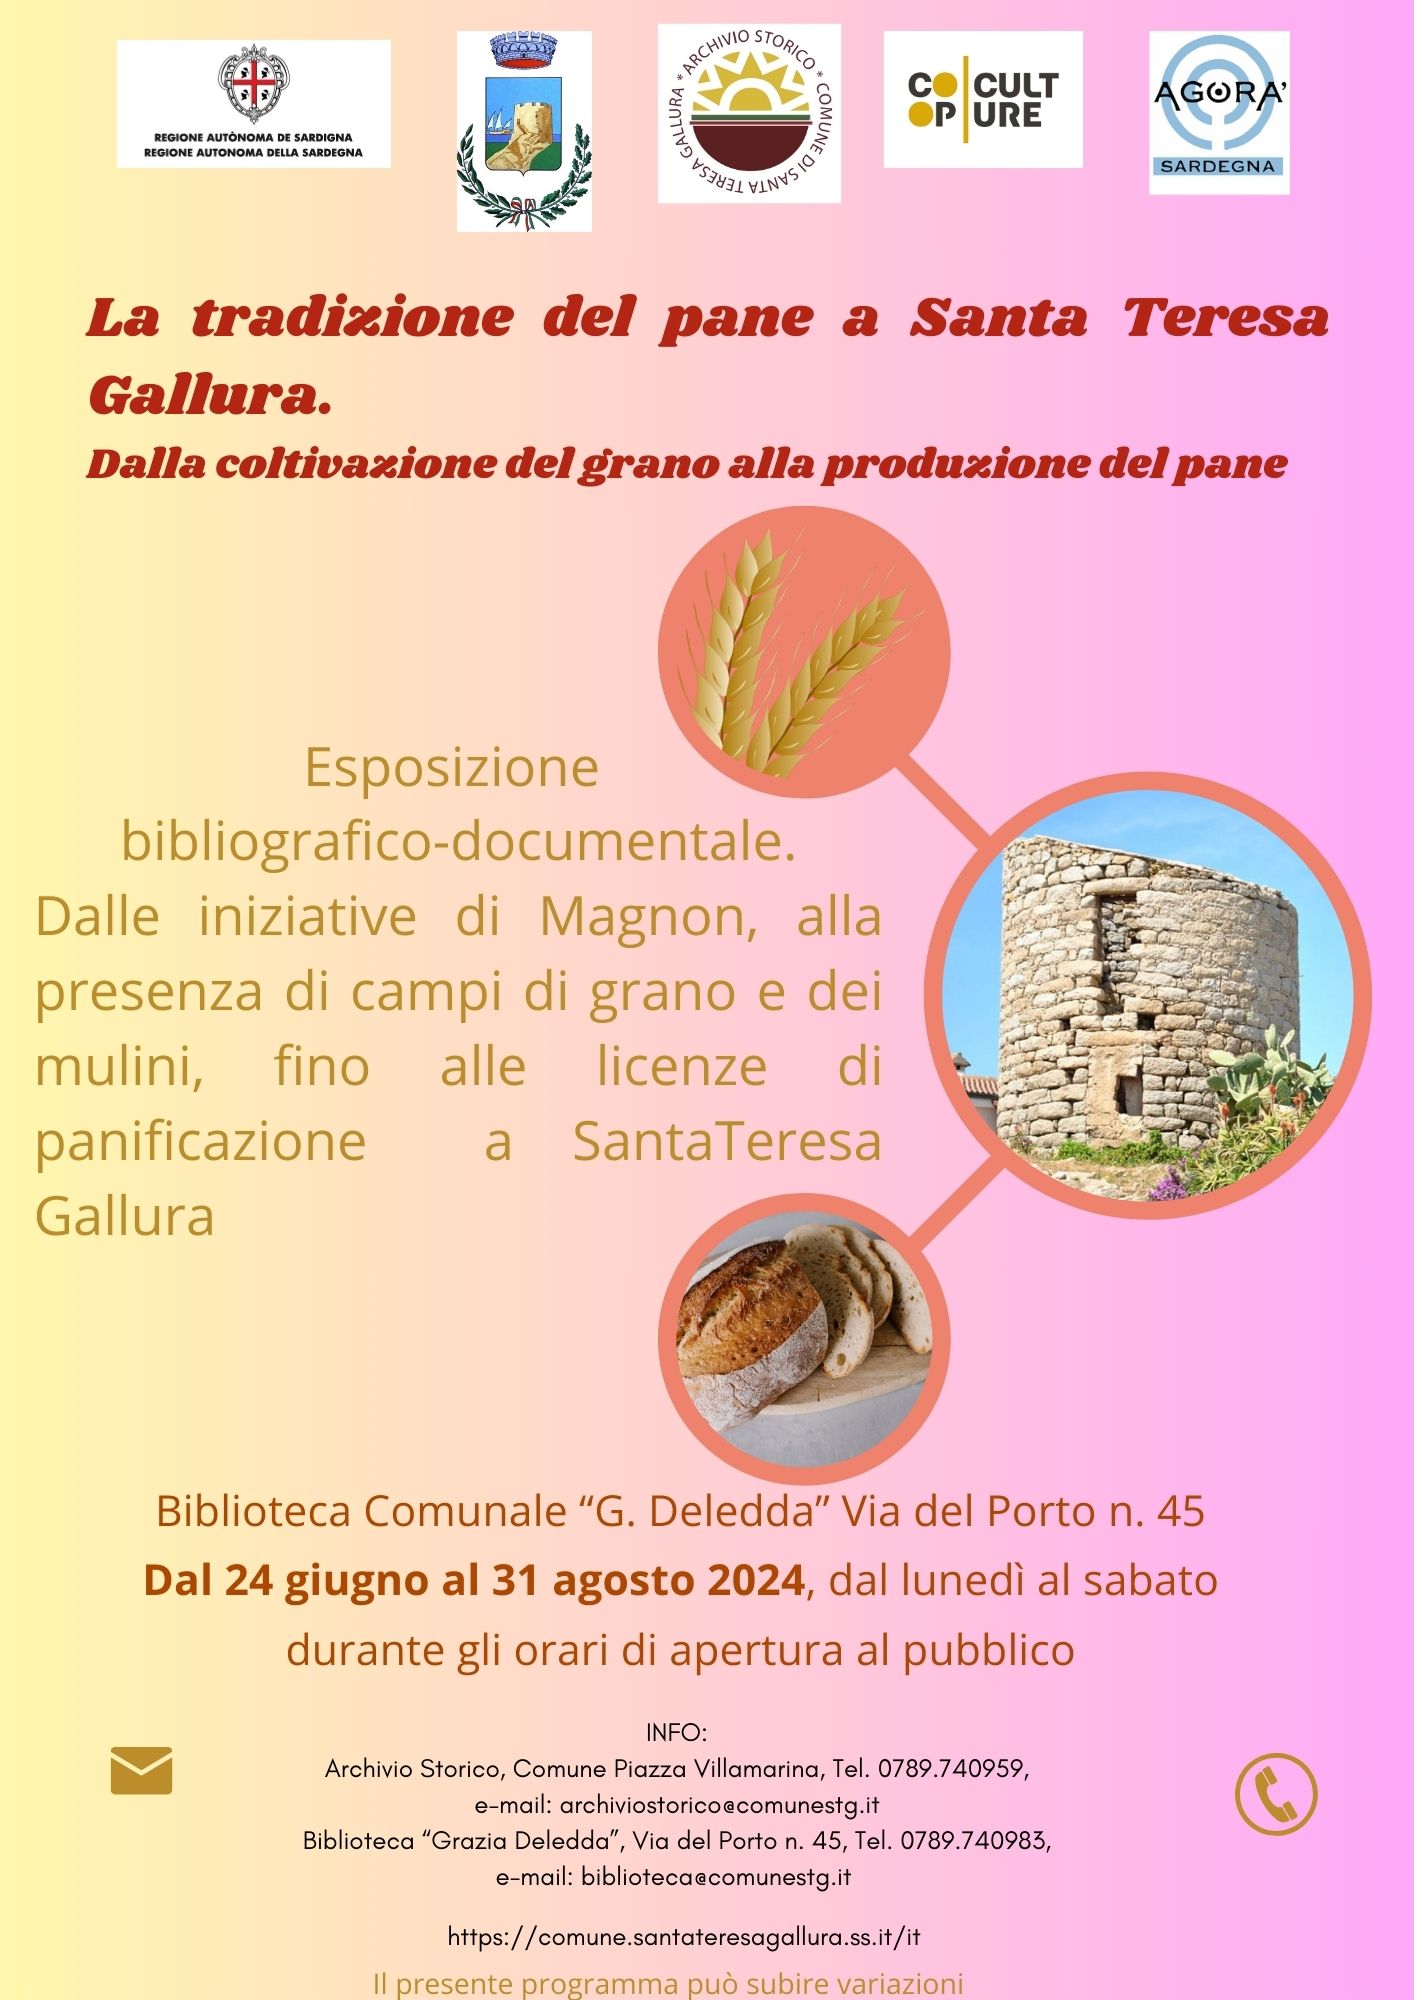 Archivio Storico - La tradizione del pane a Santa Teresa Gallura